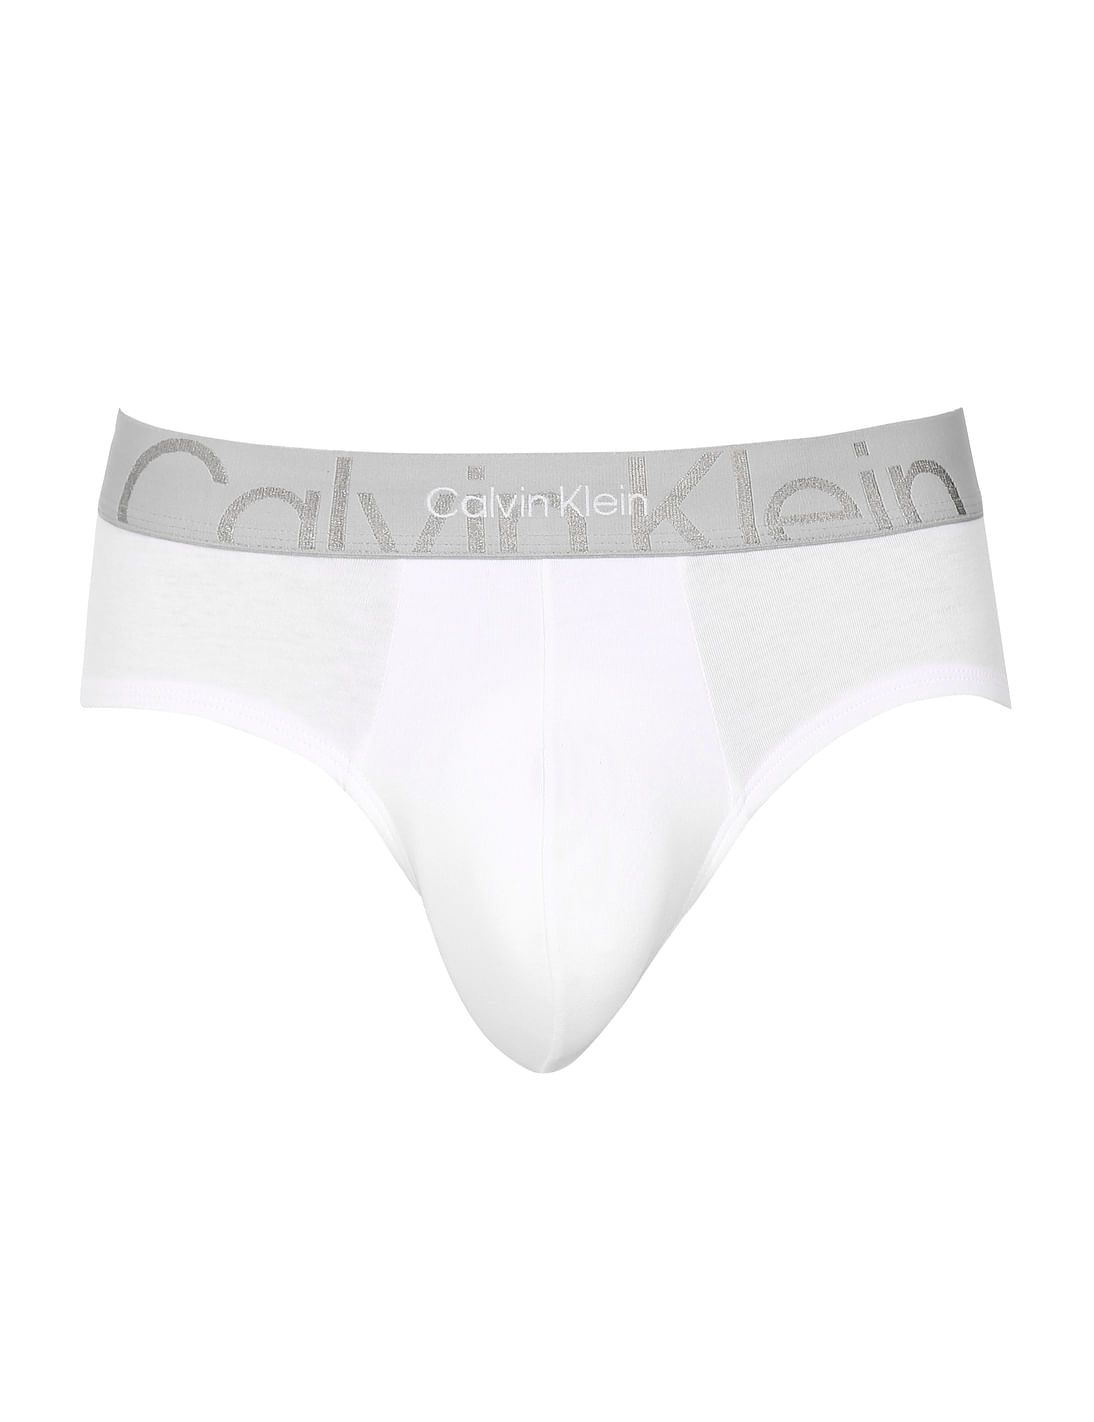 Calvin Klein Underwear White Brief 202102 Ht Ml - Buy Calvin Klein  Underwear White Brief 202102 Ht Ml online in India